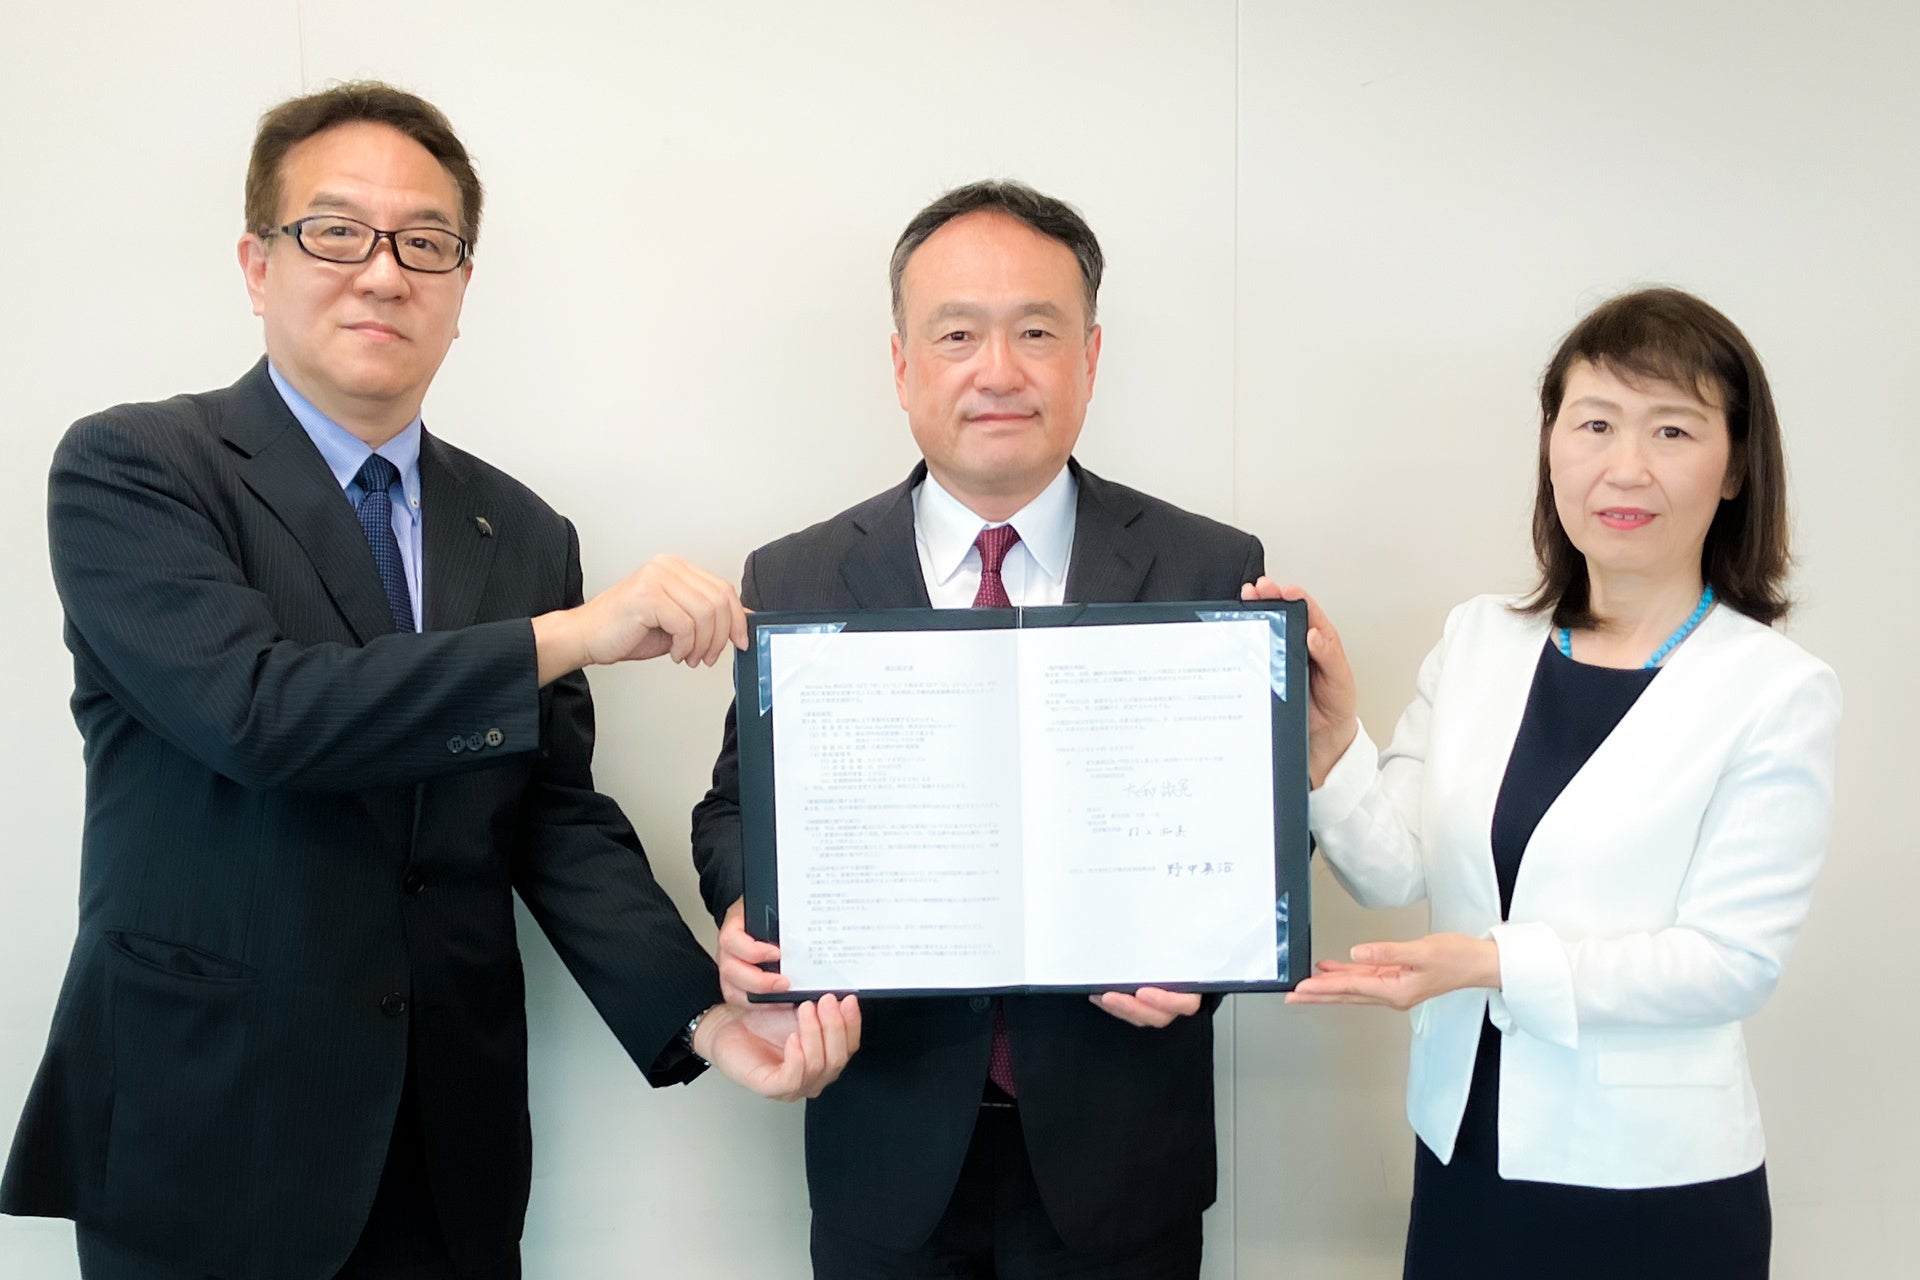 ベルシステム24、レイヤーズの合弁会社であるHorizon Oneが、3拠点目の開設に向けて熊本市との立地協定を締結